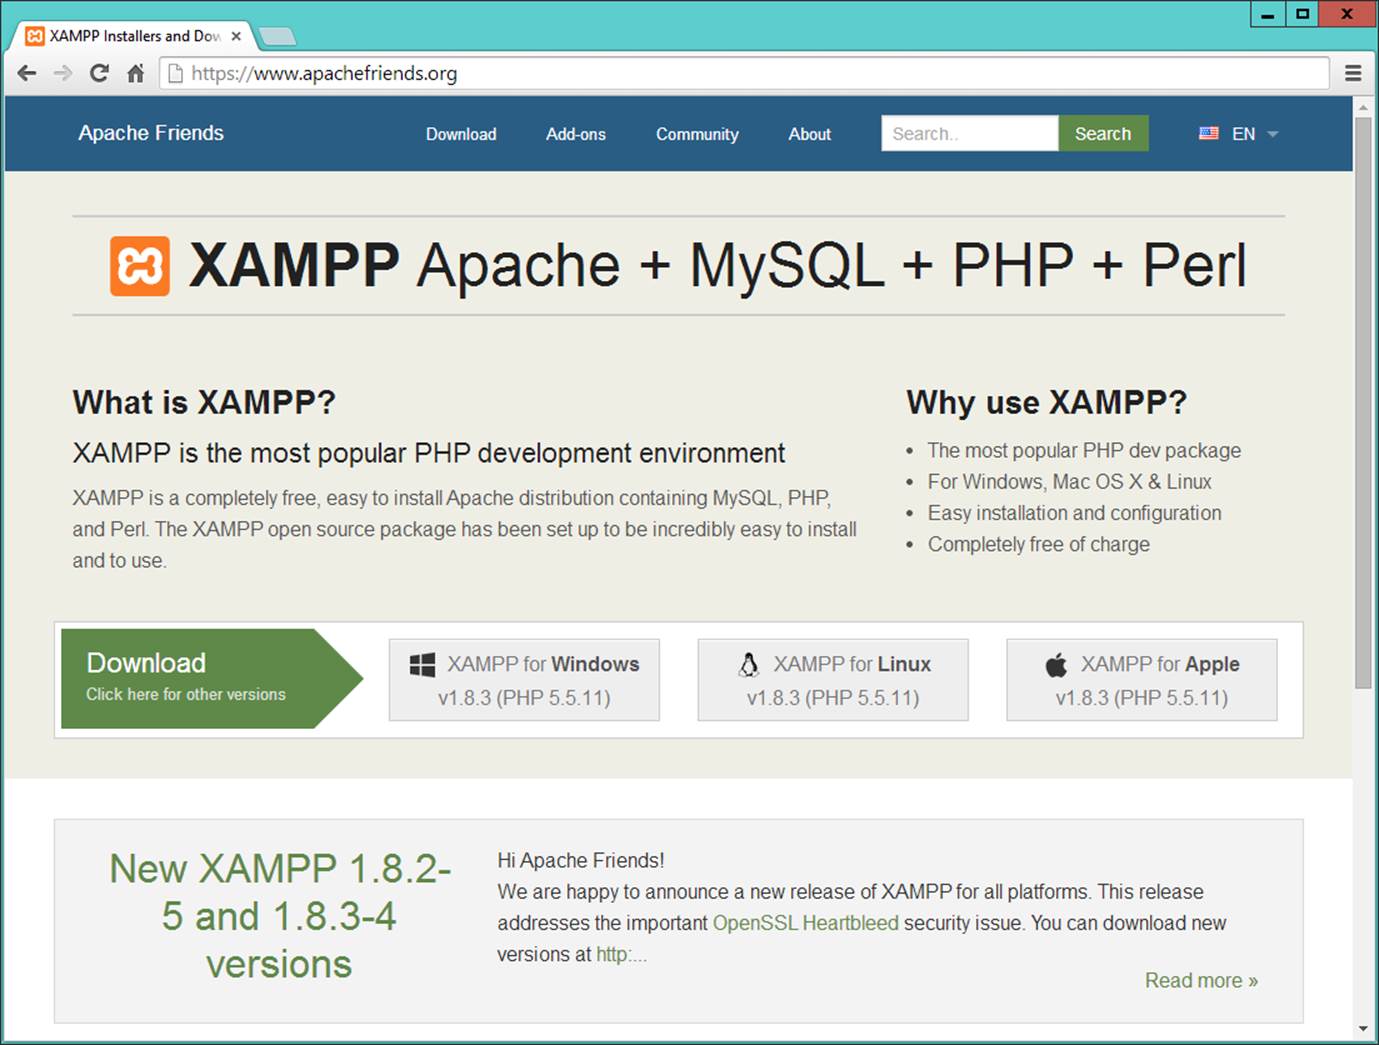 The XAMPP website